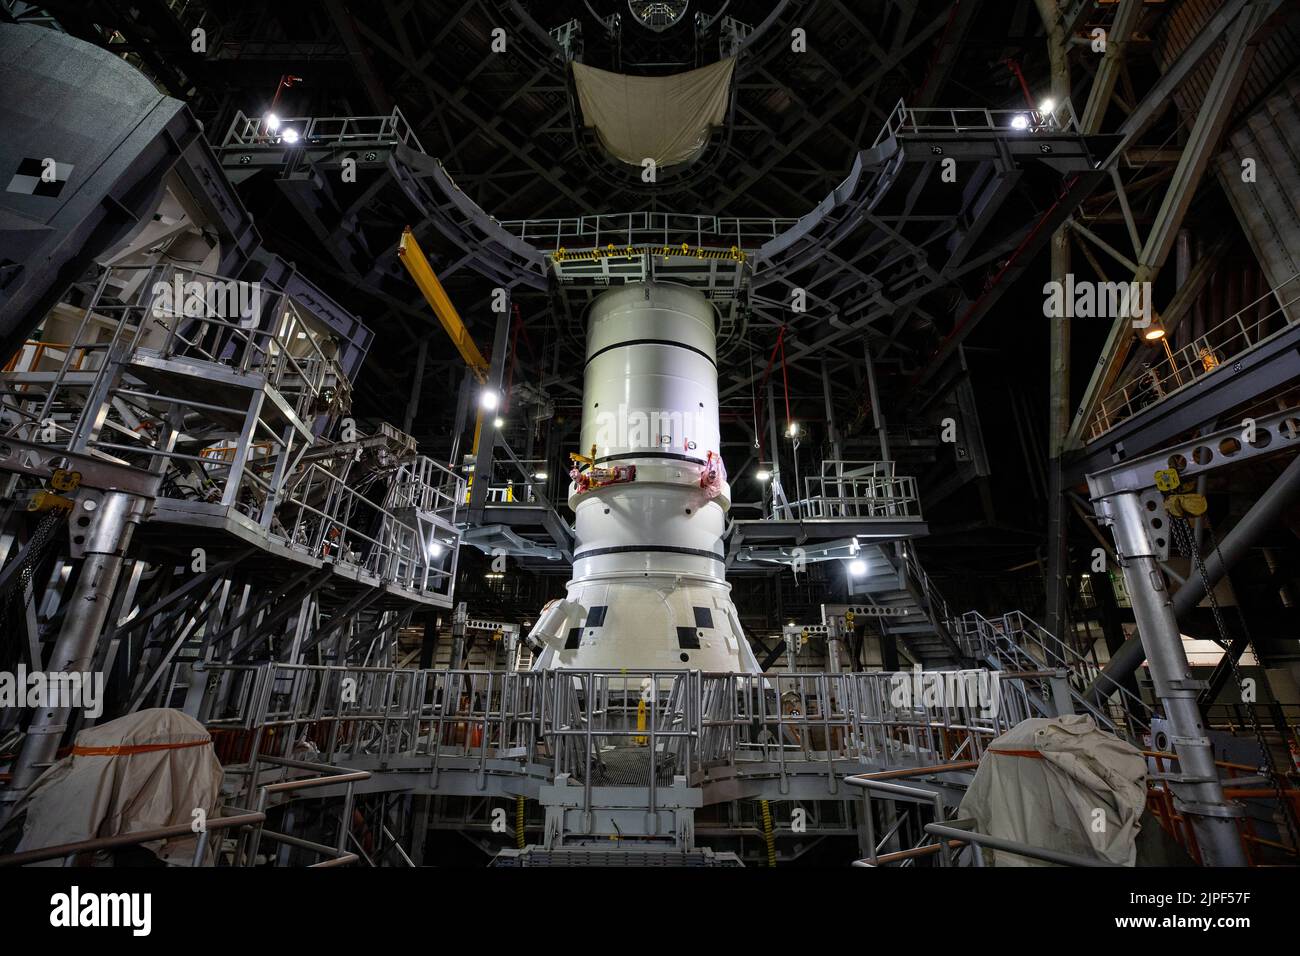 Centro Espacial Kennedy, Florida, EE.UU. 23rd de Nov de 2020. Los segmentos de popa de los propulsores de cohetes sólidos del Sistema de Lanzamiento Espacial para la misión Artemis I se mueven desde la bahía alta 4 dentro de la VAB para apilar en el lanzador móvil dentro de la bahía alta 3. Artemis I es la primera de una serie de misiones cada vez más complejas que permitirán la exploración humana a la Luna y Marte. El primer lanzamiento de SLS a Moon de 2022 con Be Unmanned. En 2024 la NASA planea enviar a la primera mujer a la luna. Crédito: NASA/ZUMA Press Wire Service/ZUMAPRESS.com/Alamy Live News Foto de stock